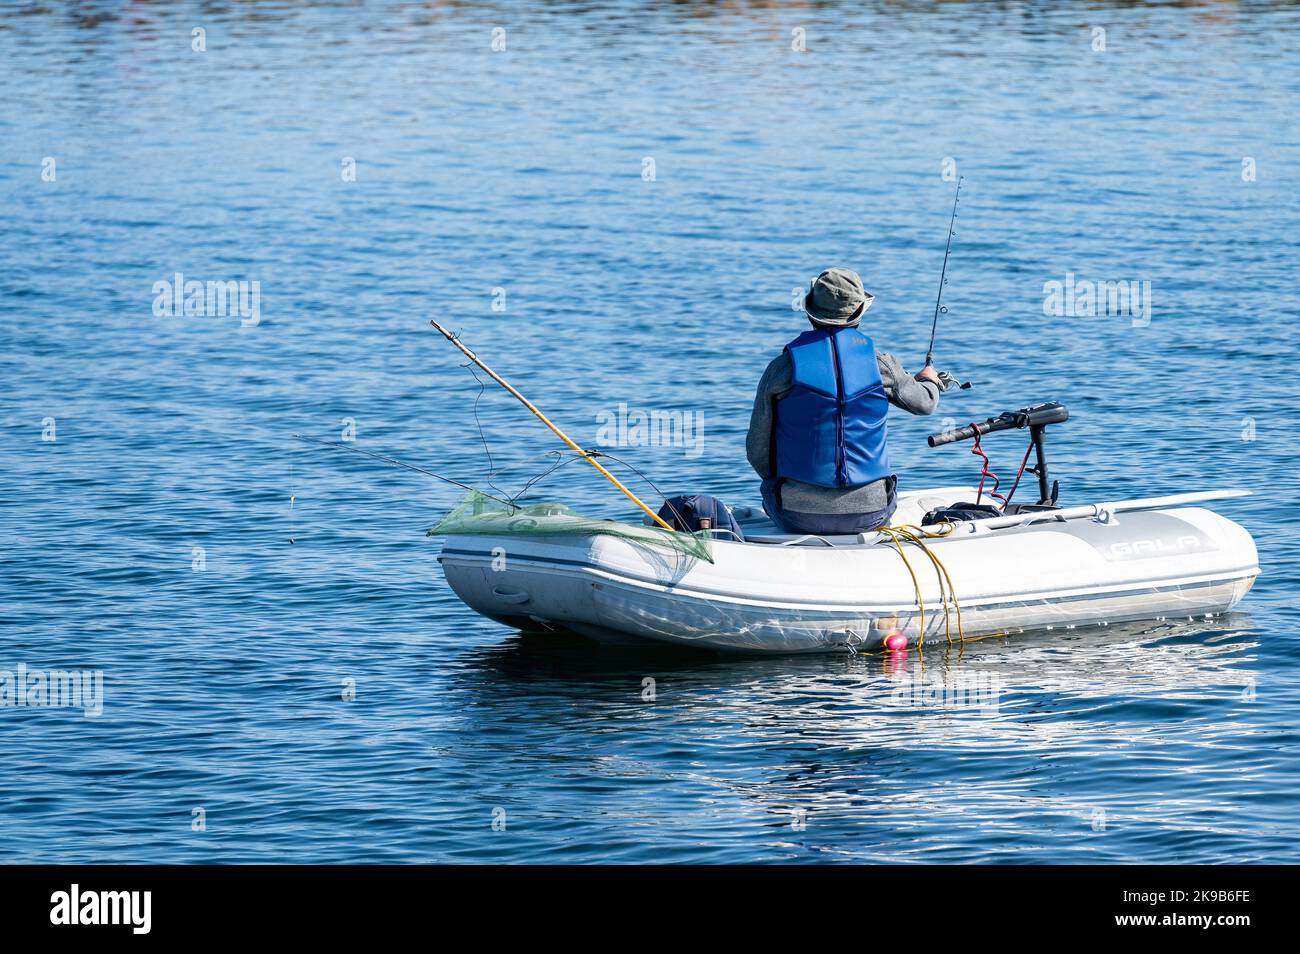 Un homme seul utilise un bateau de caoutchouc Gala et une tige pour pêcher dans le lac Simcoe. Banque D'Images